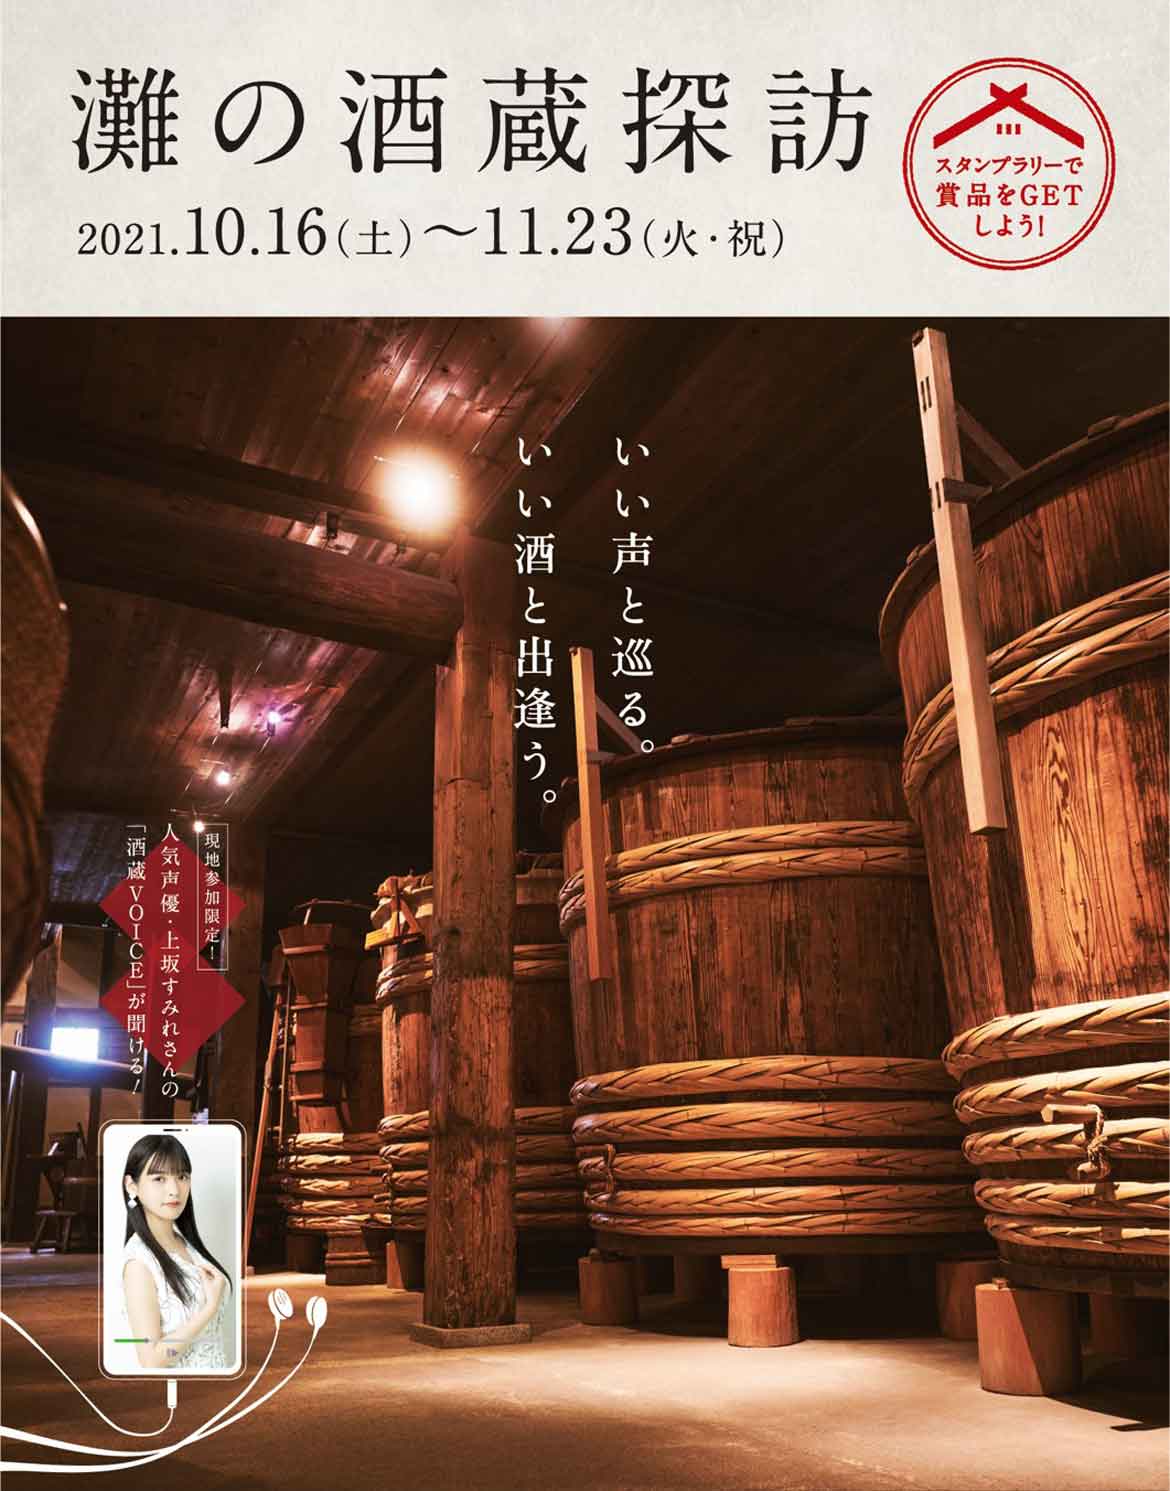 日本一の酒どころ「灘五郷」で旬を迎えた日本酒を味わう『灘の酒蔵探訪 2021』開催